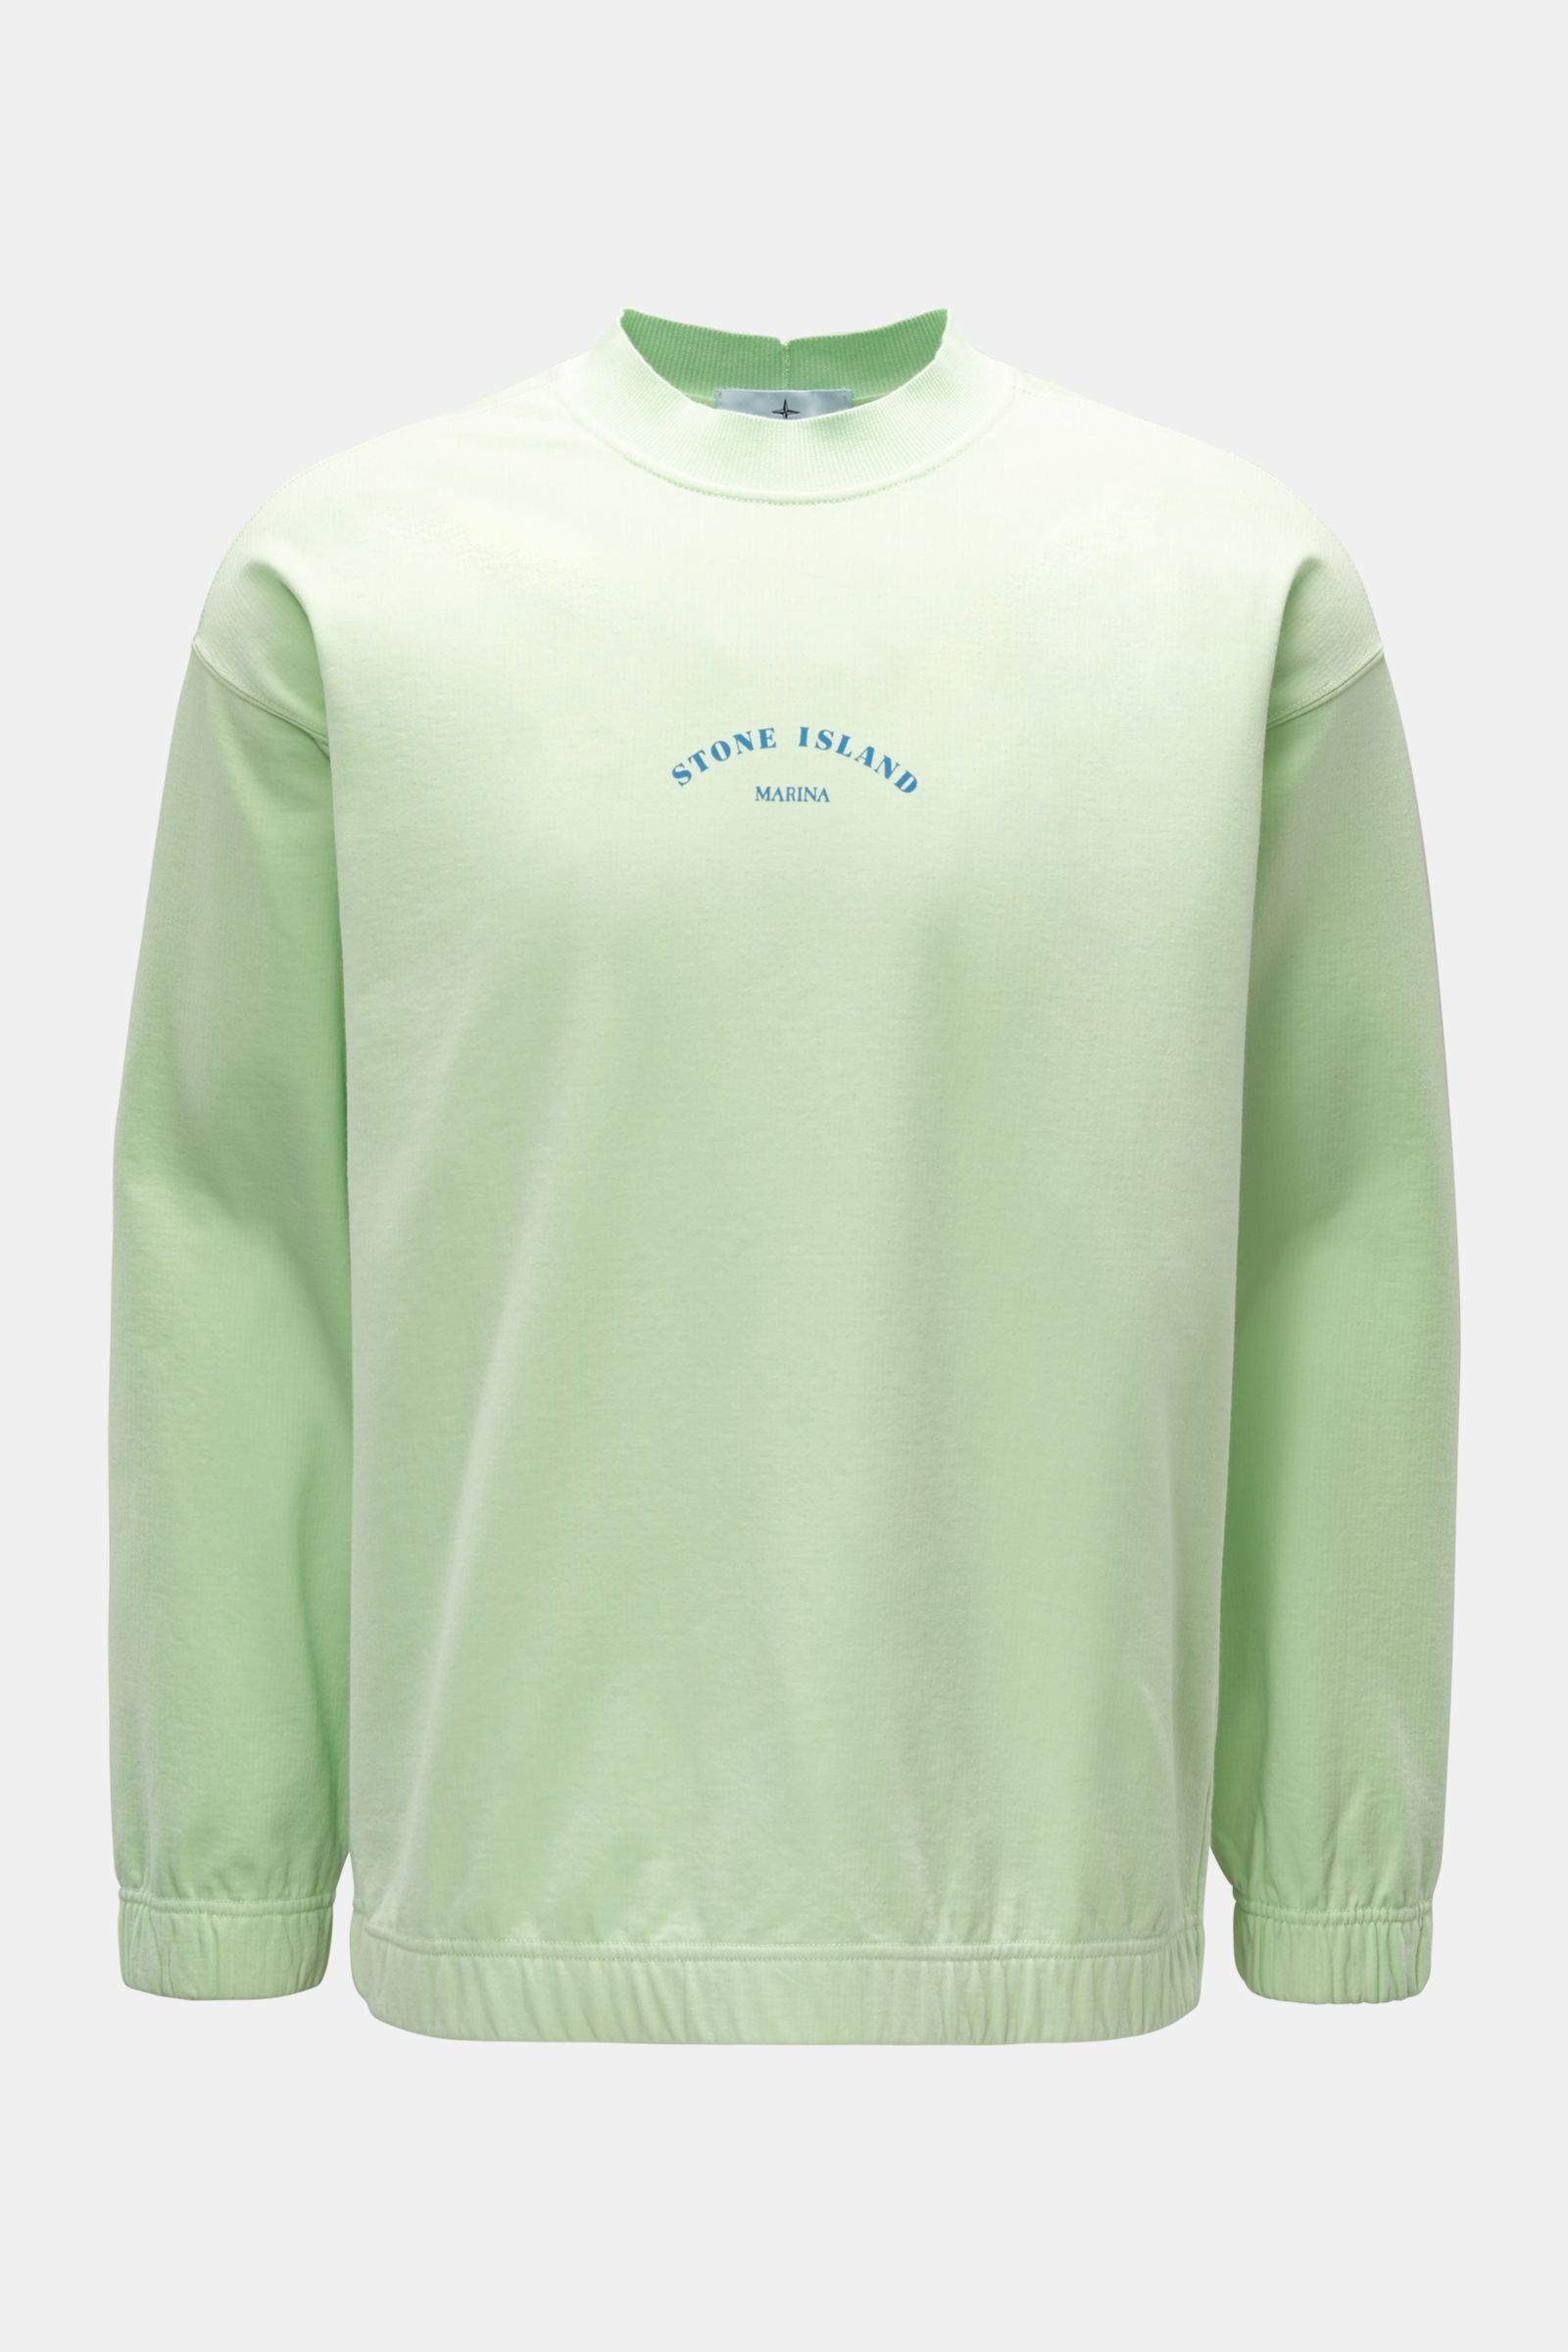 STONE ISLAND crew neck sweatshirt 'Marina' neon green | BRAUN Hamburg